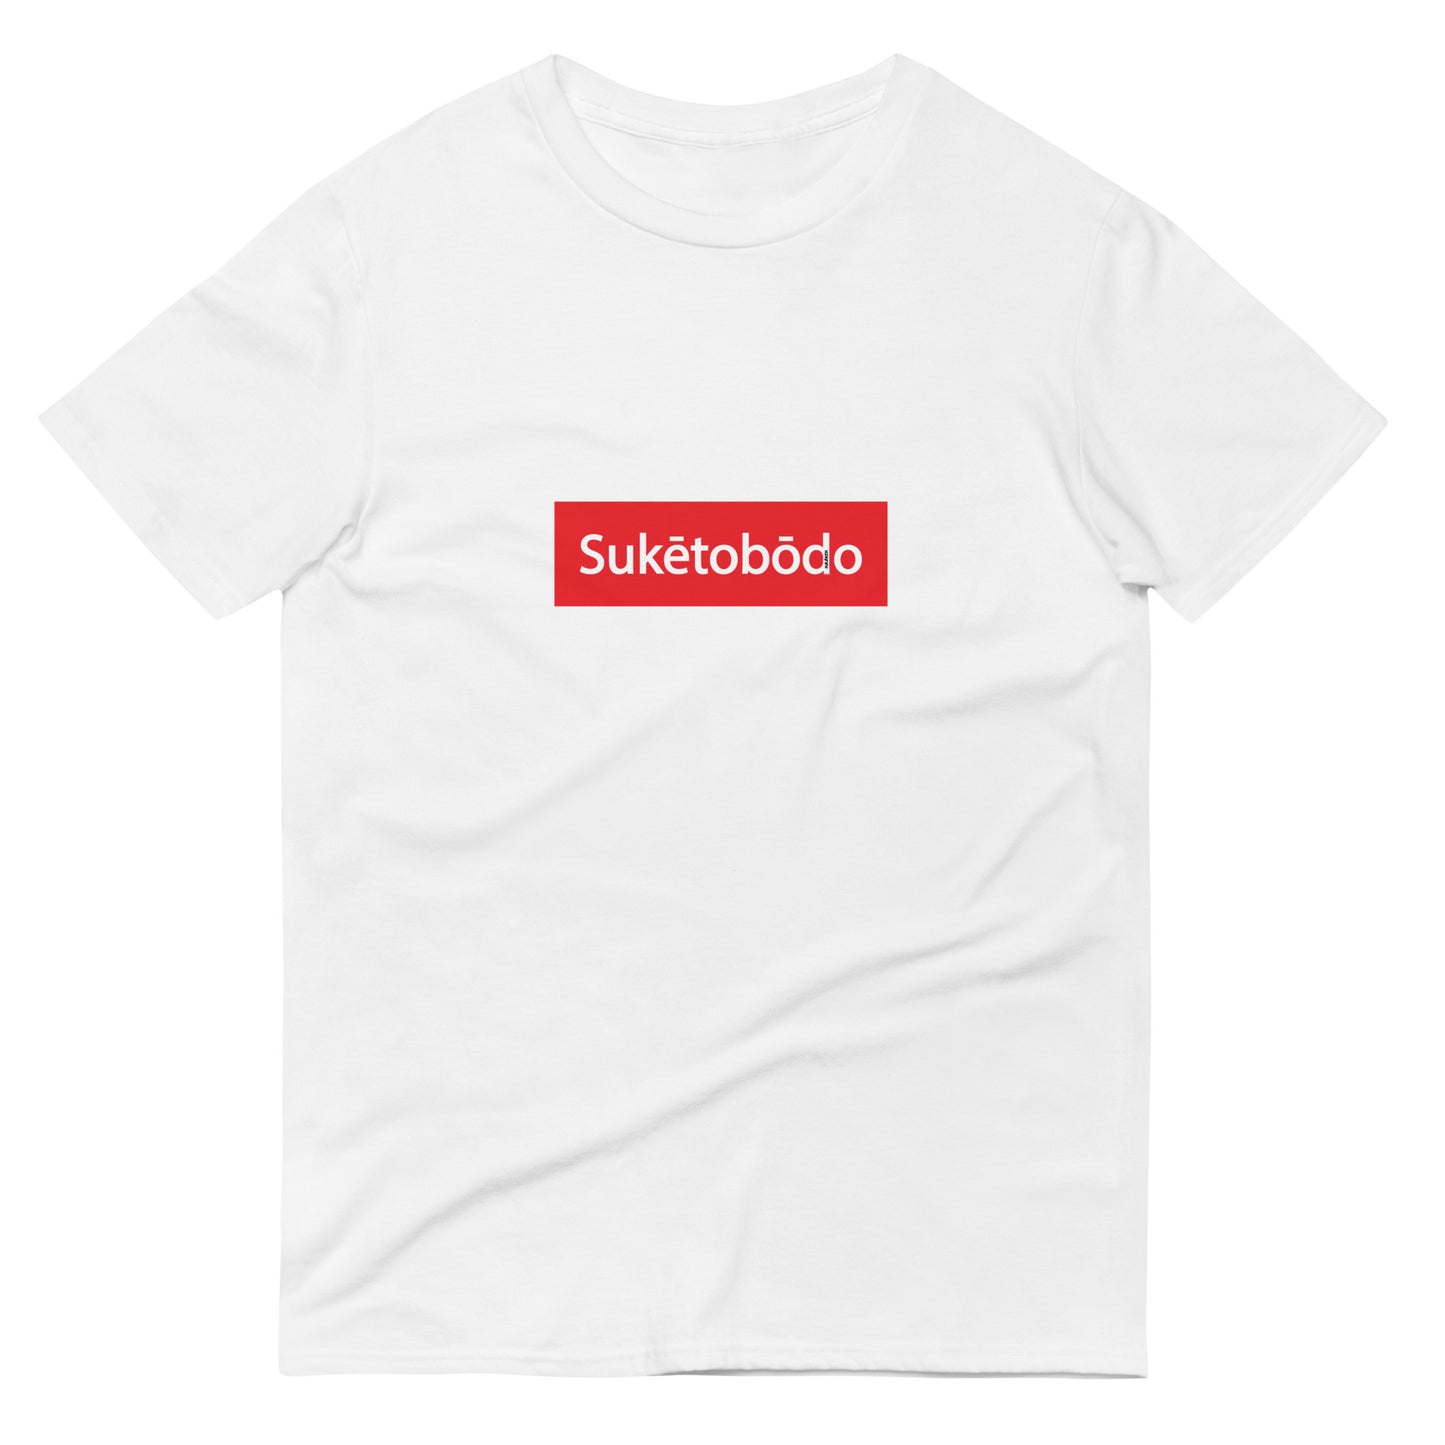 Suketobodo Brand / #02 / Shirt / Suketobodo Red Box